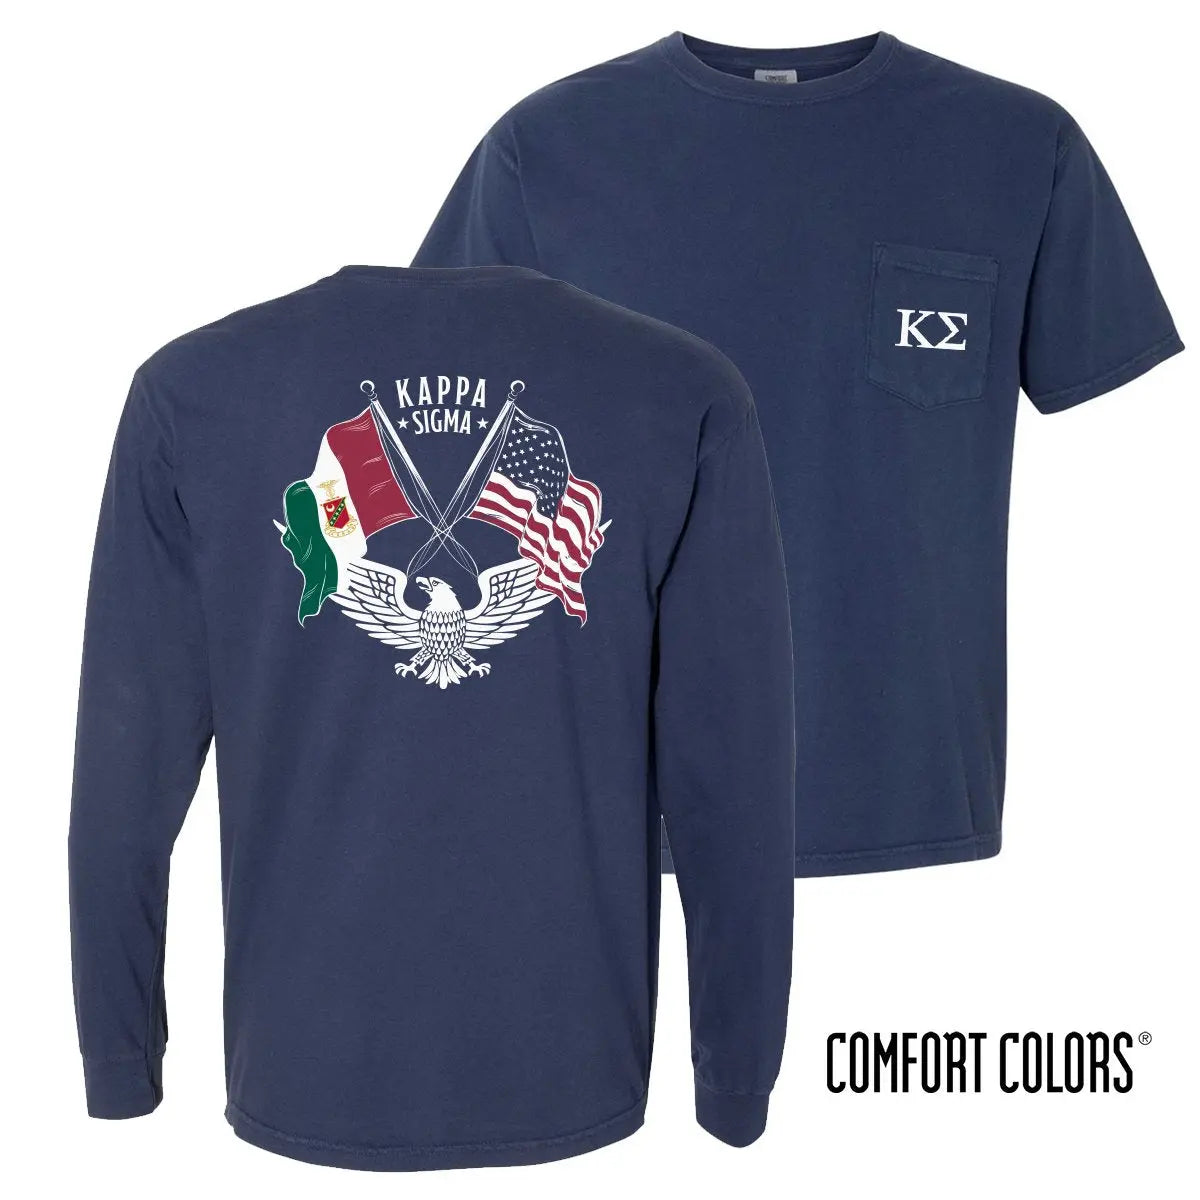 Kappa Sig Comfort Colors Navy Patriot tee - Kappa Sigma Official Store